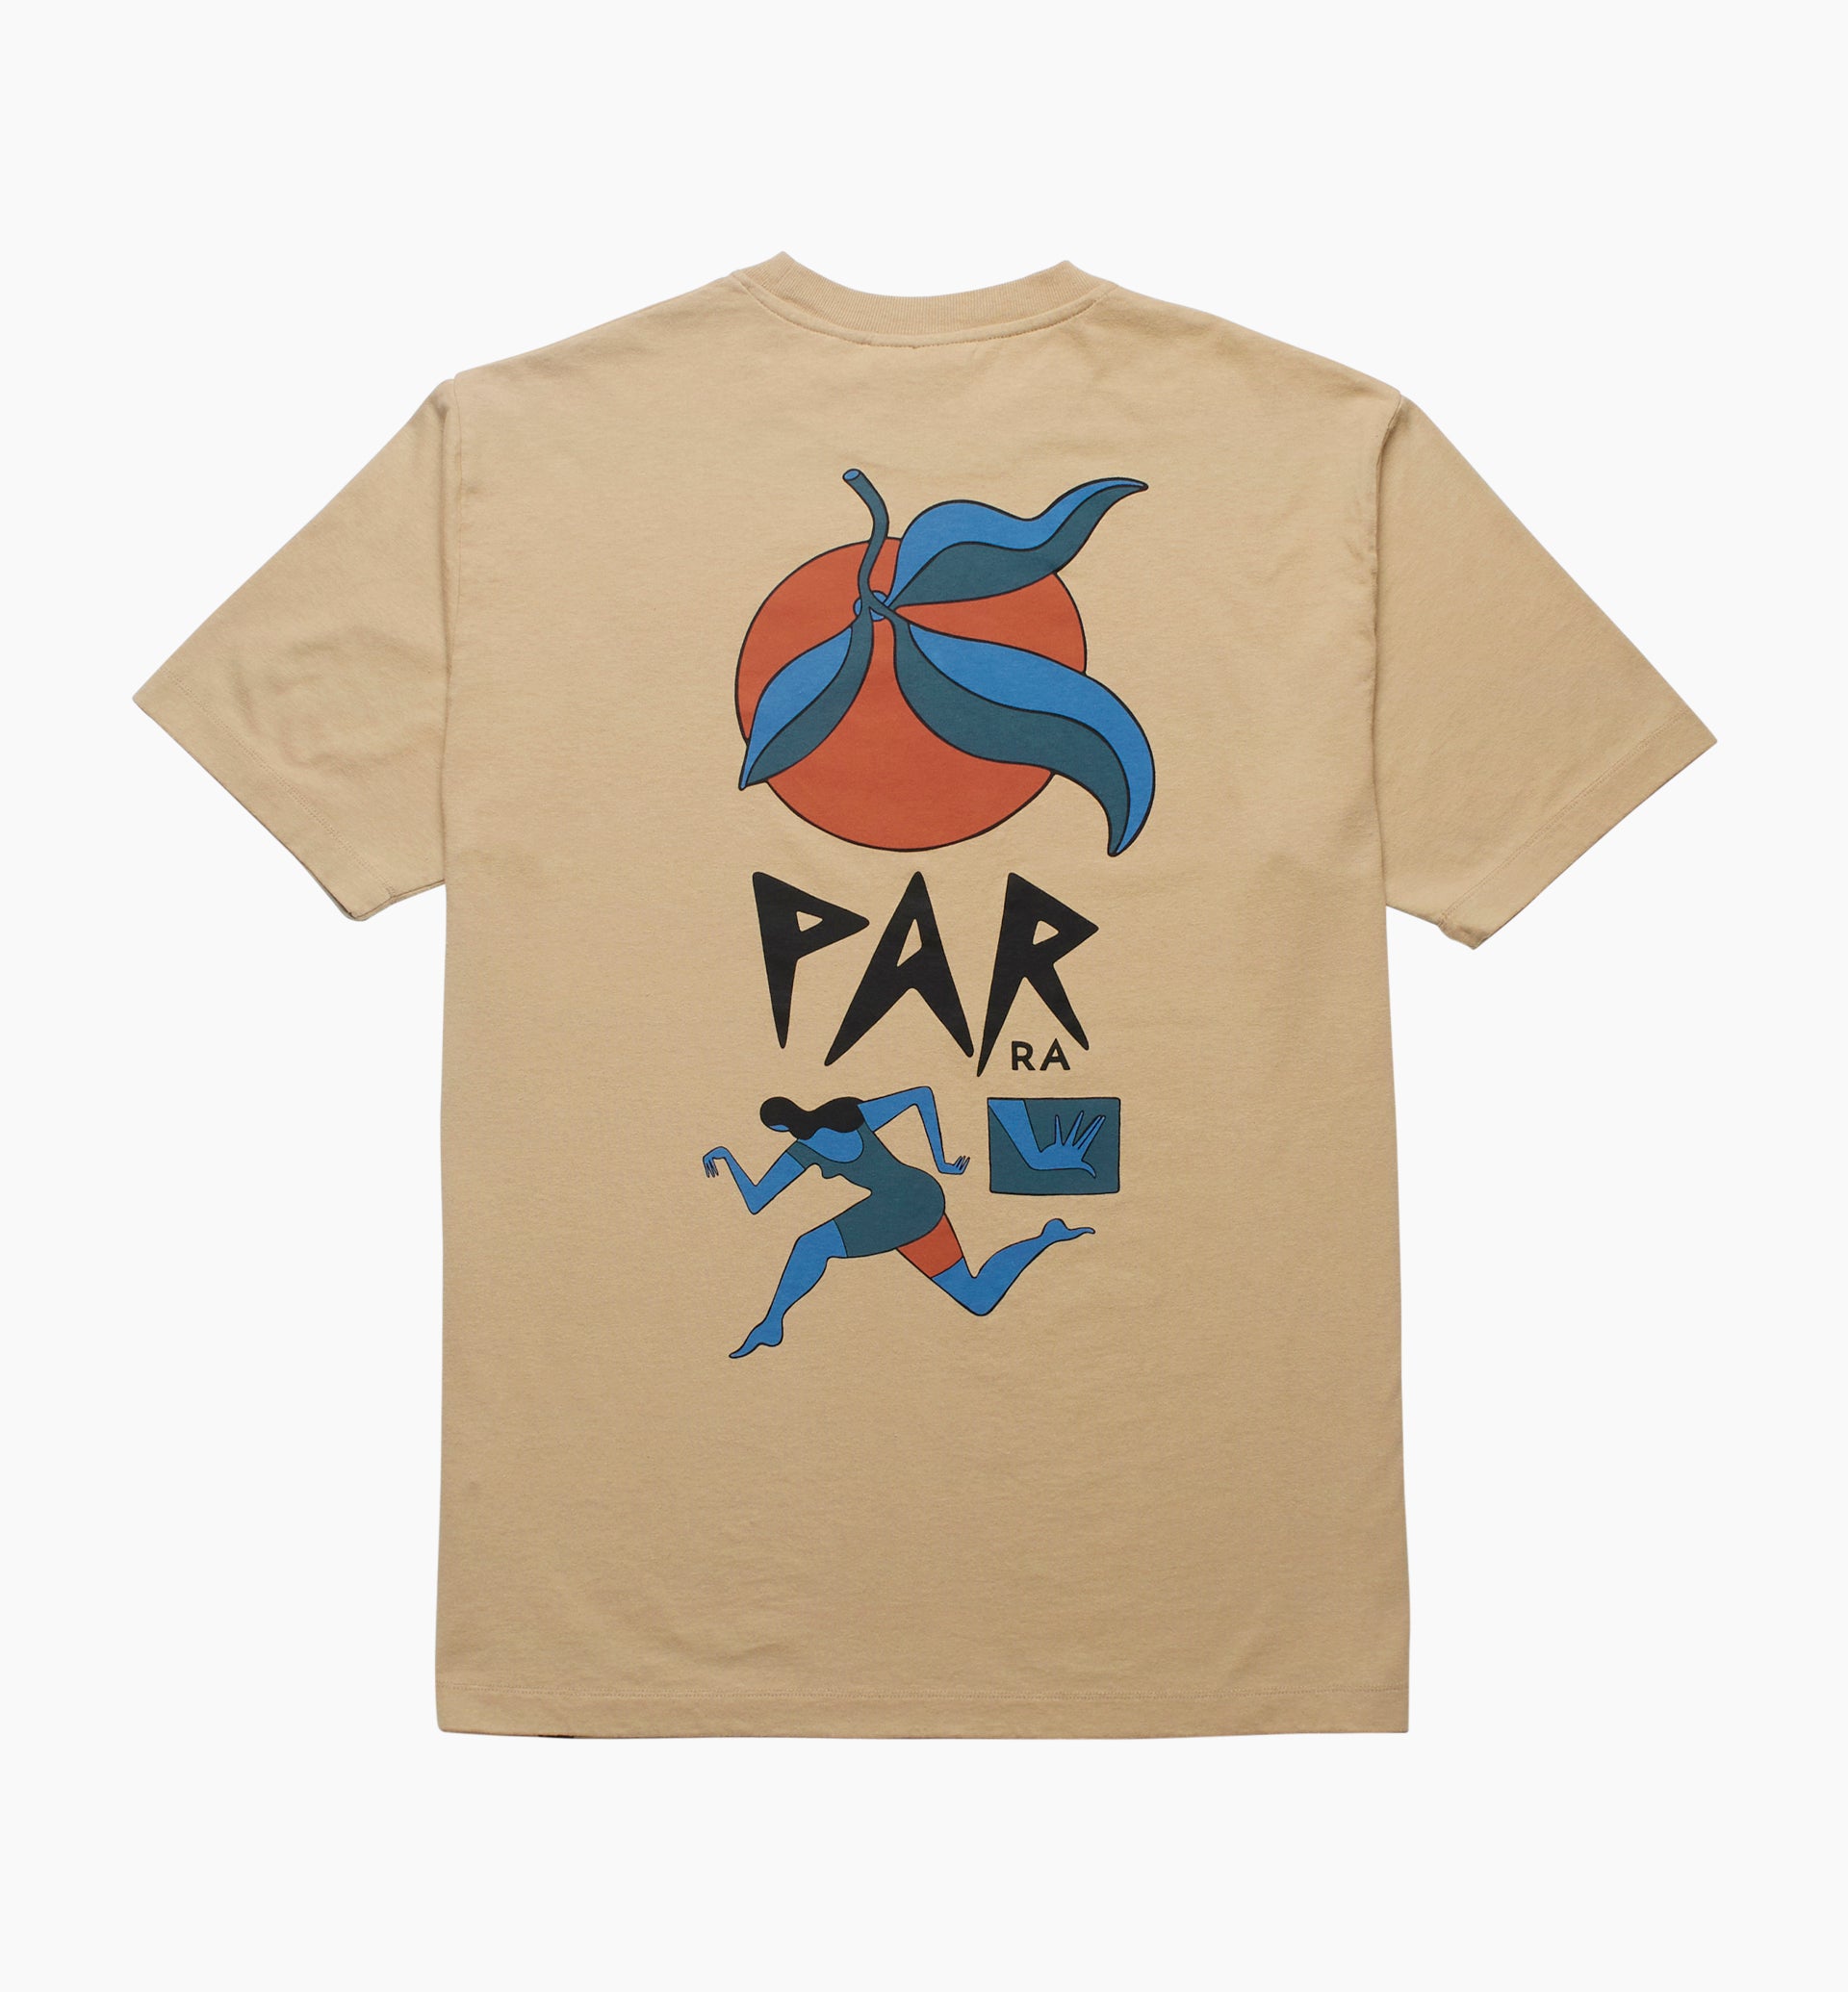 Parra - evil orange t-shirt